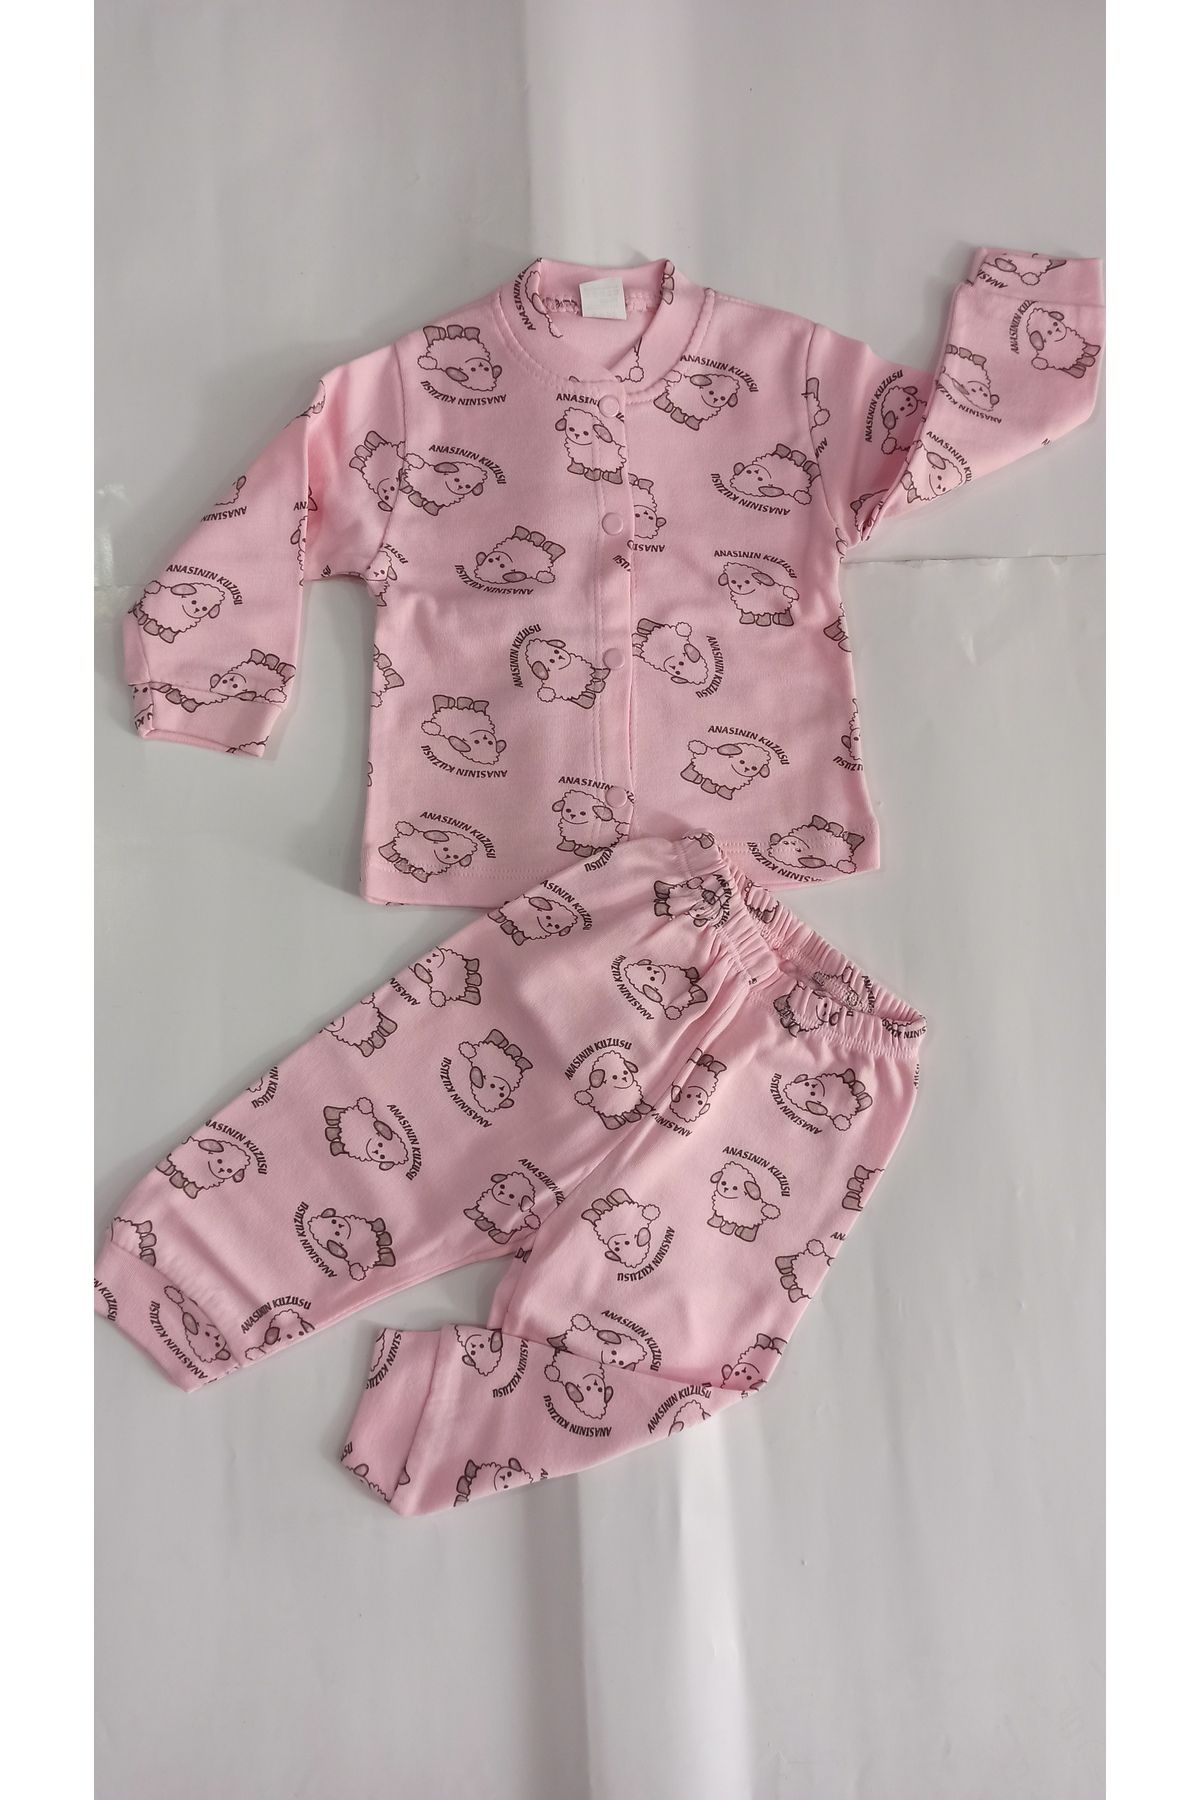 Sevilla Anasının kuzusu desenli önden çıtçıtlı bebek pijama takımı